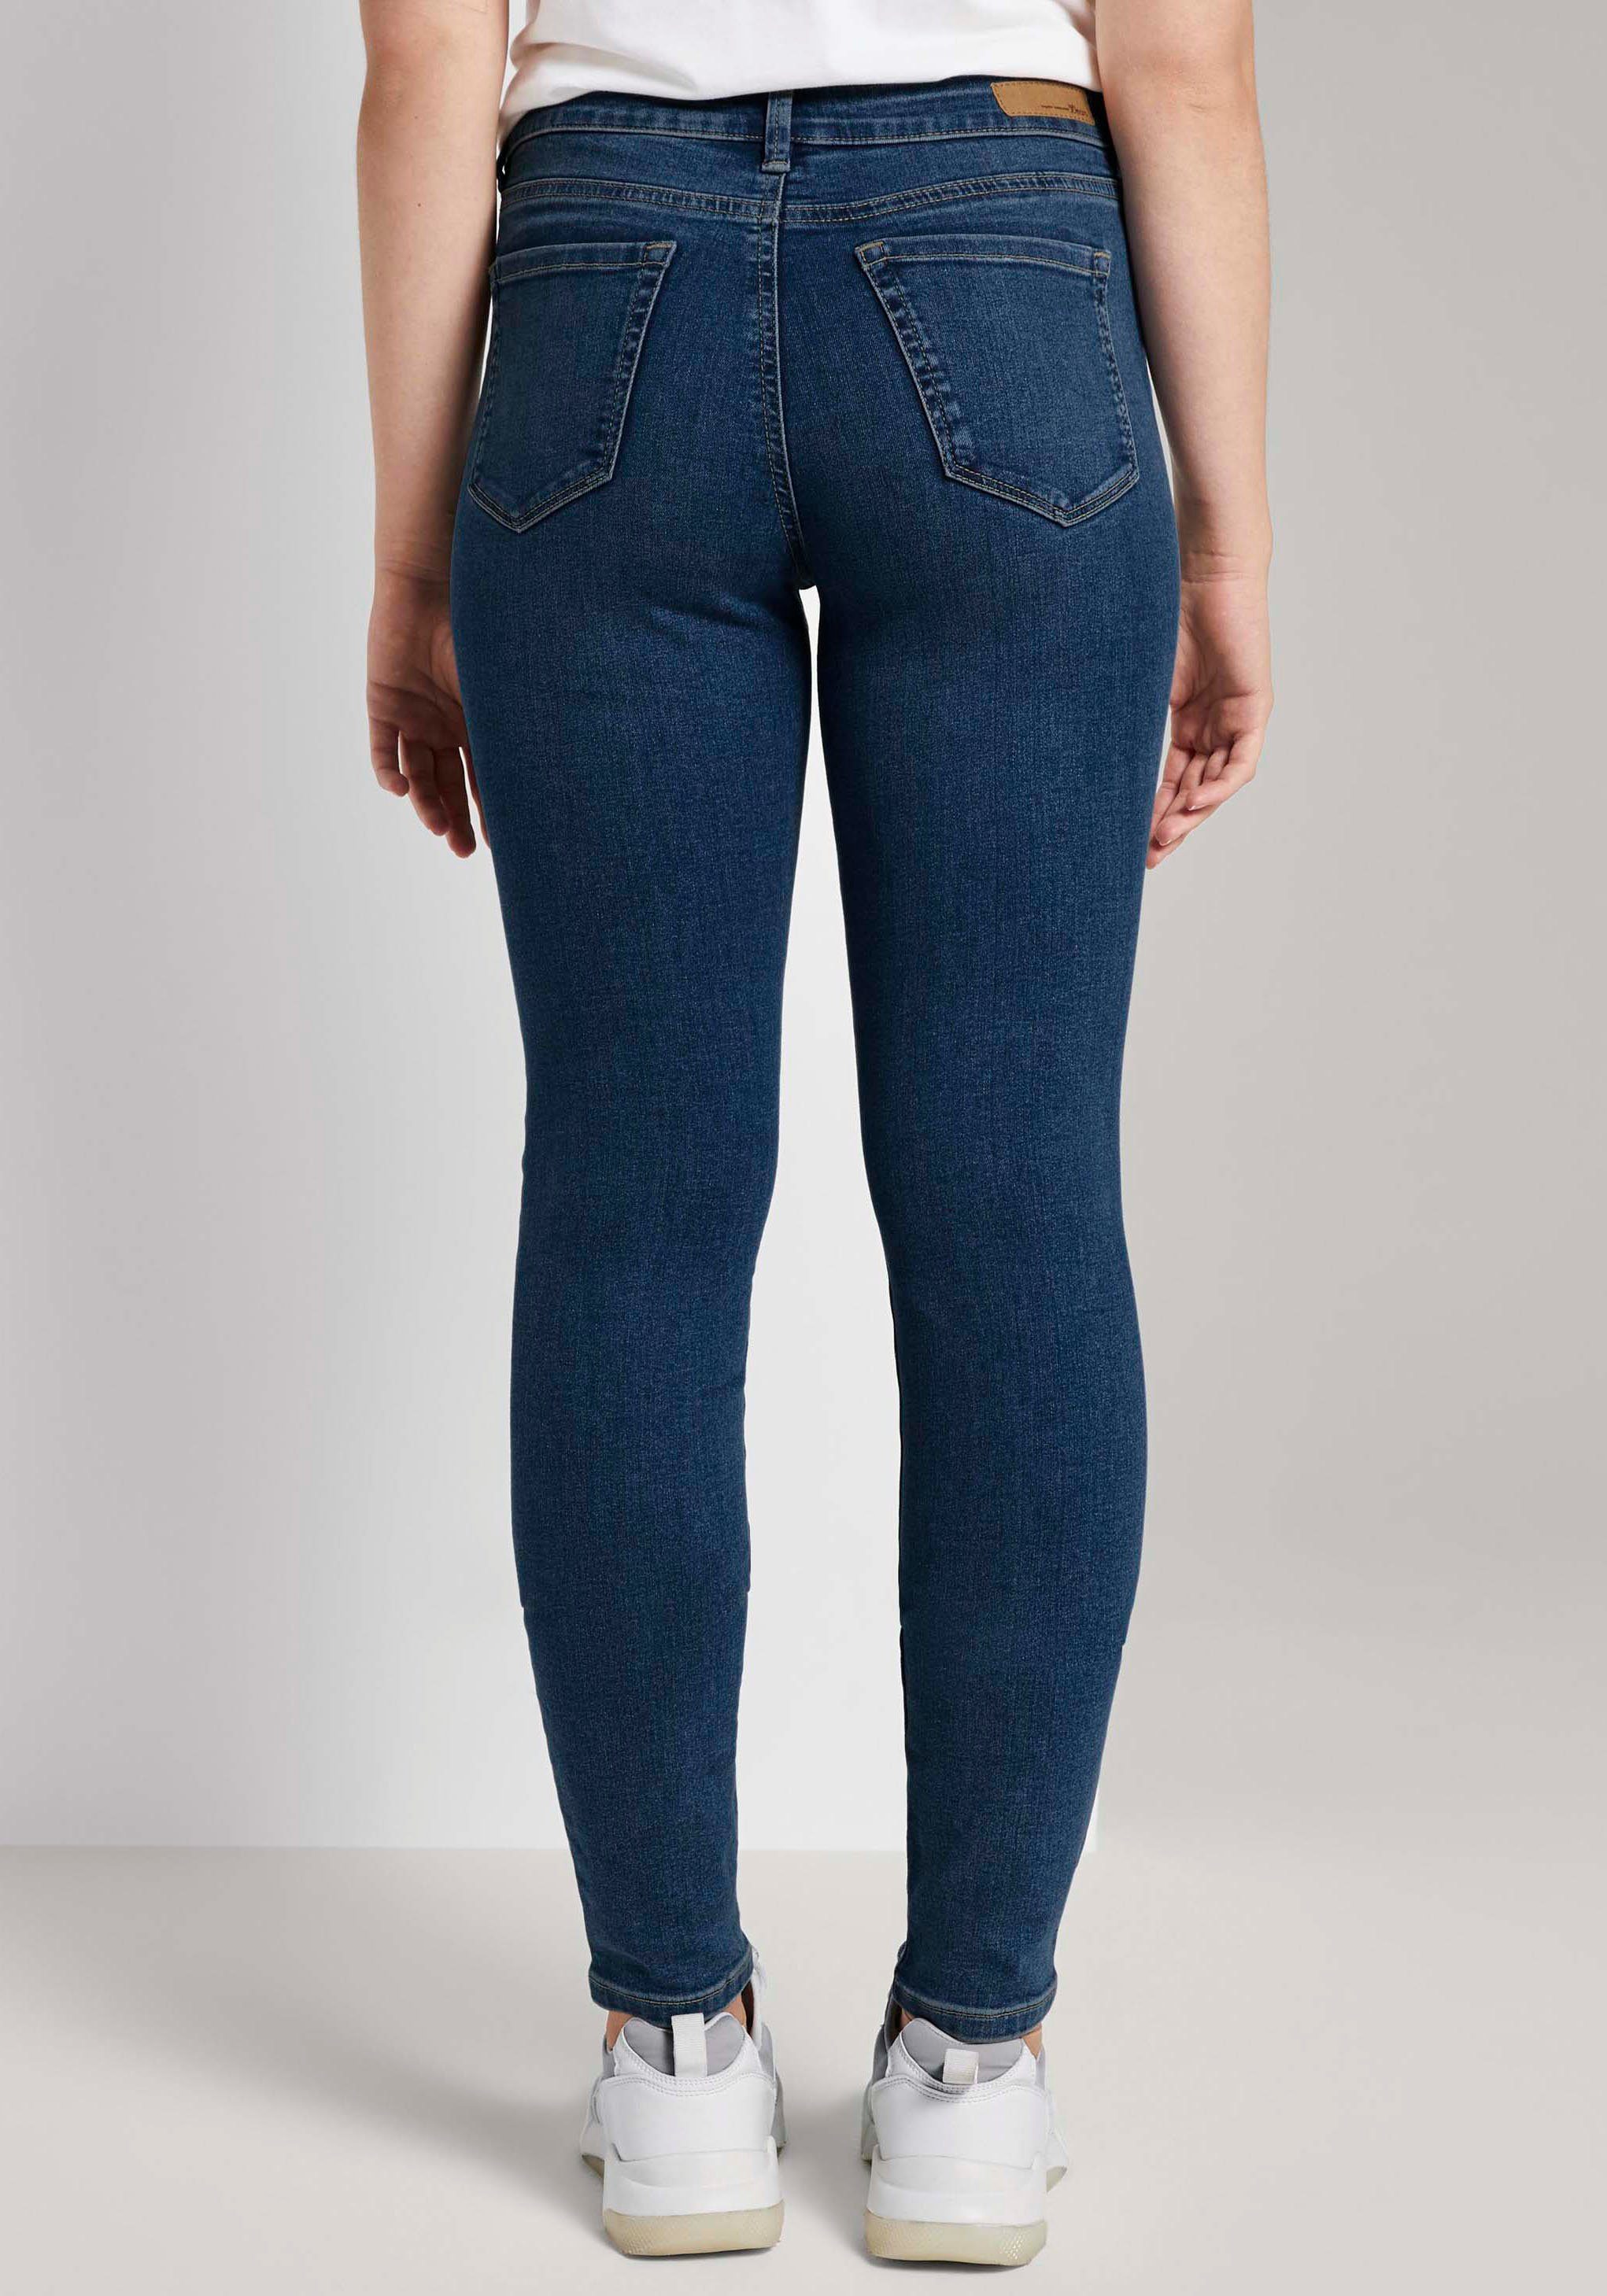 TOM TAILOR Denim Slim-fit-Jeans im Schnitt, Bequeme durch Ware Passform elastische 5-Pocket